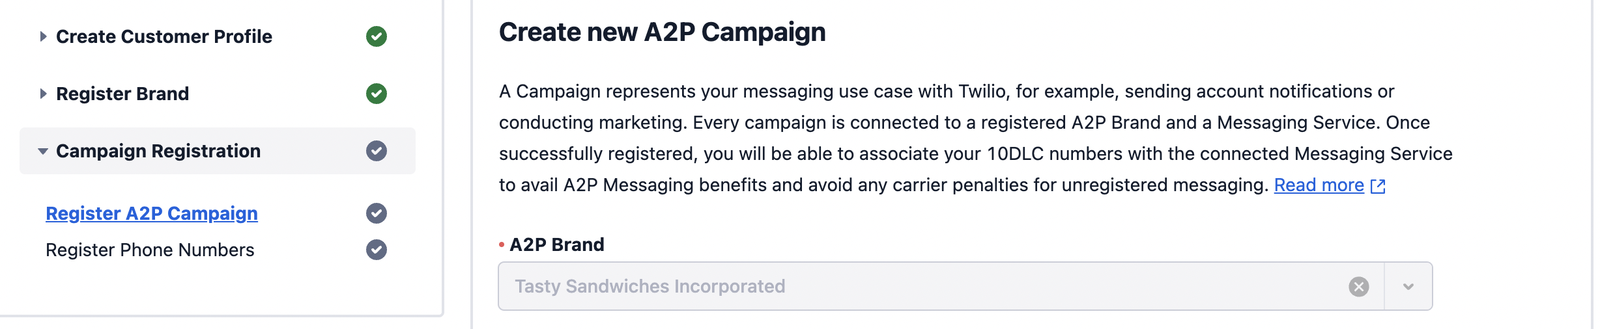 Create new A2P Campaign.